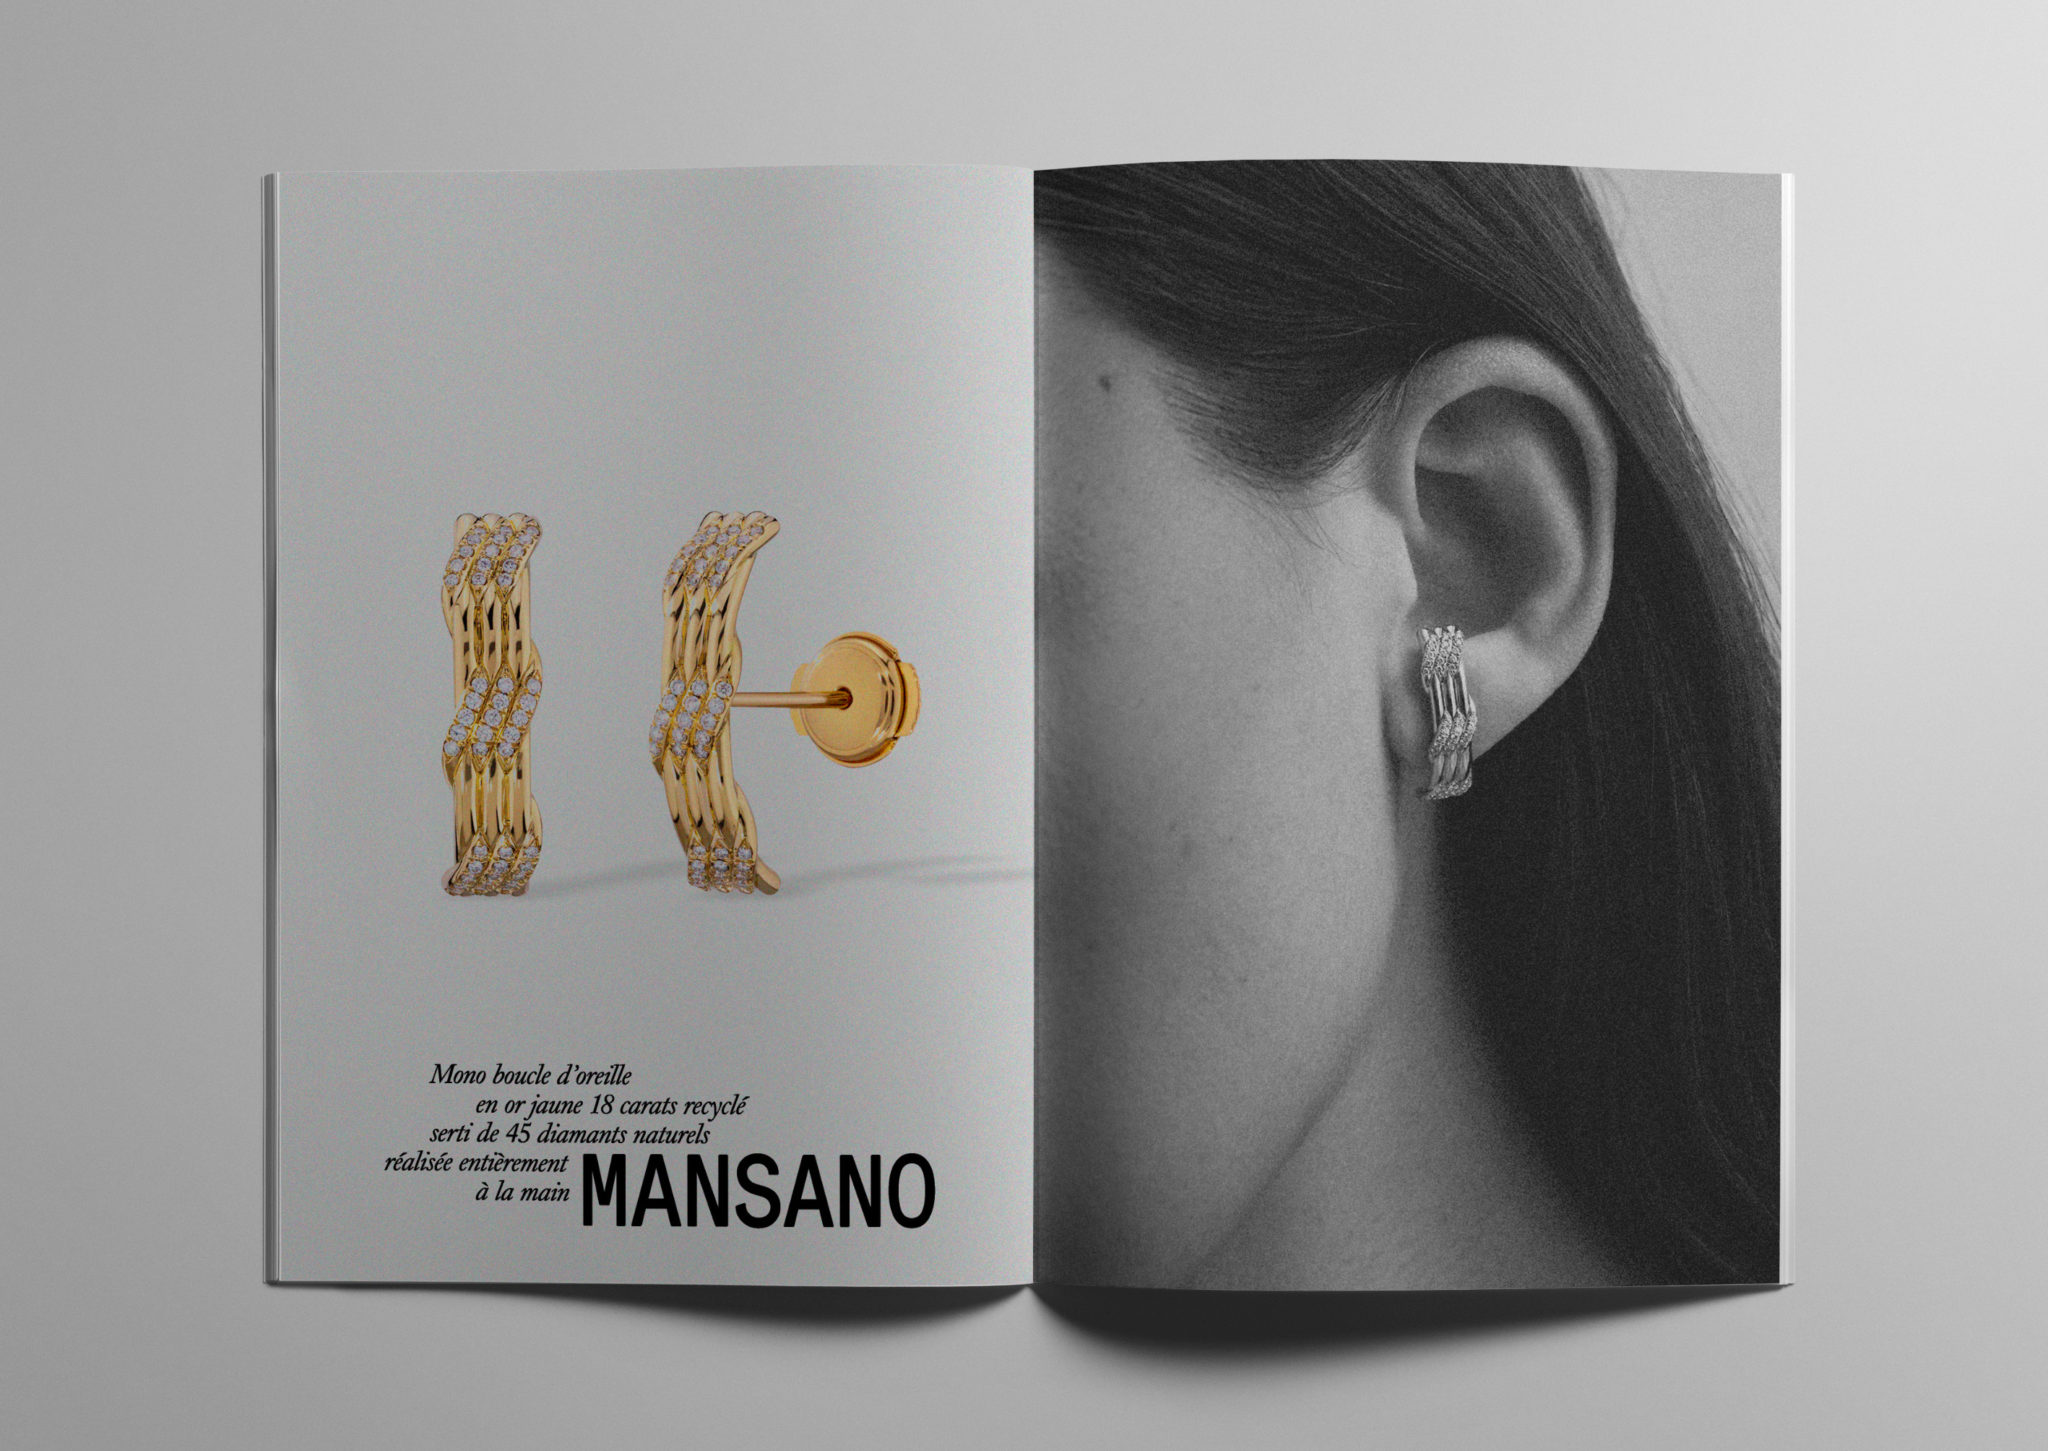 Mono boucle d'oreille en or jaune 18 carats recyclé serti de 45 diamants naturels réalisée entièrement à la main, MANSANO